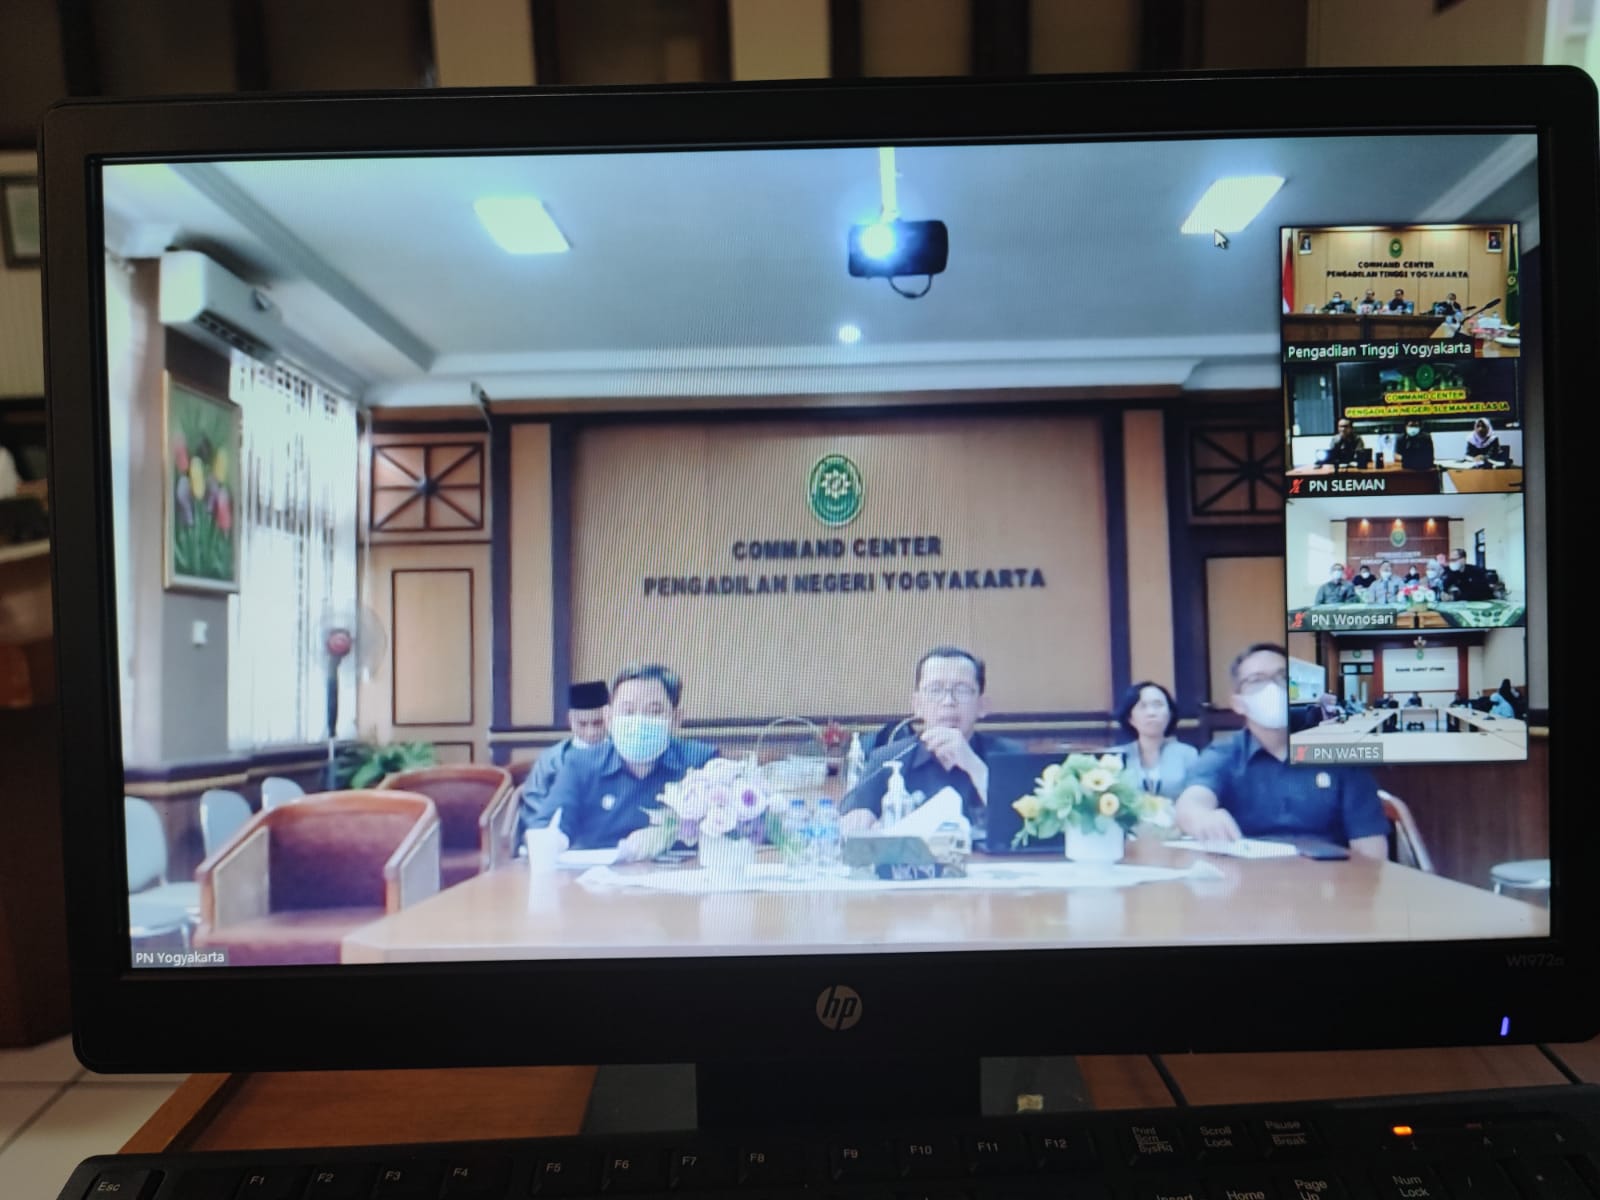 Rapat Koordinasi Implementasi Aplikasi e-Berpadu bersama Pengadilan Tinggi Yogyakarta